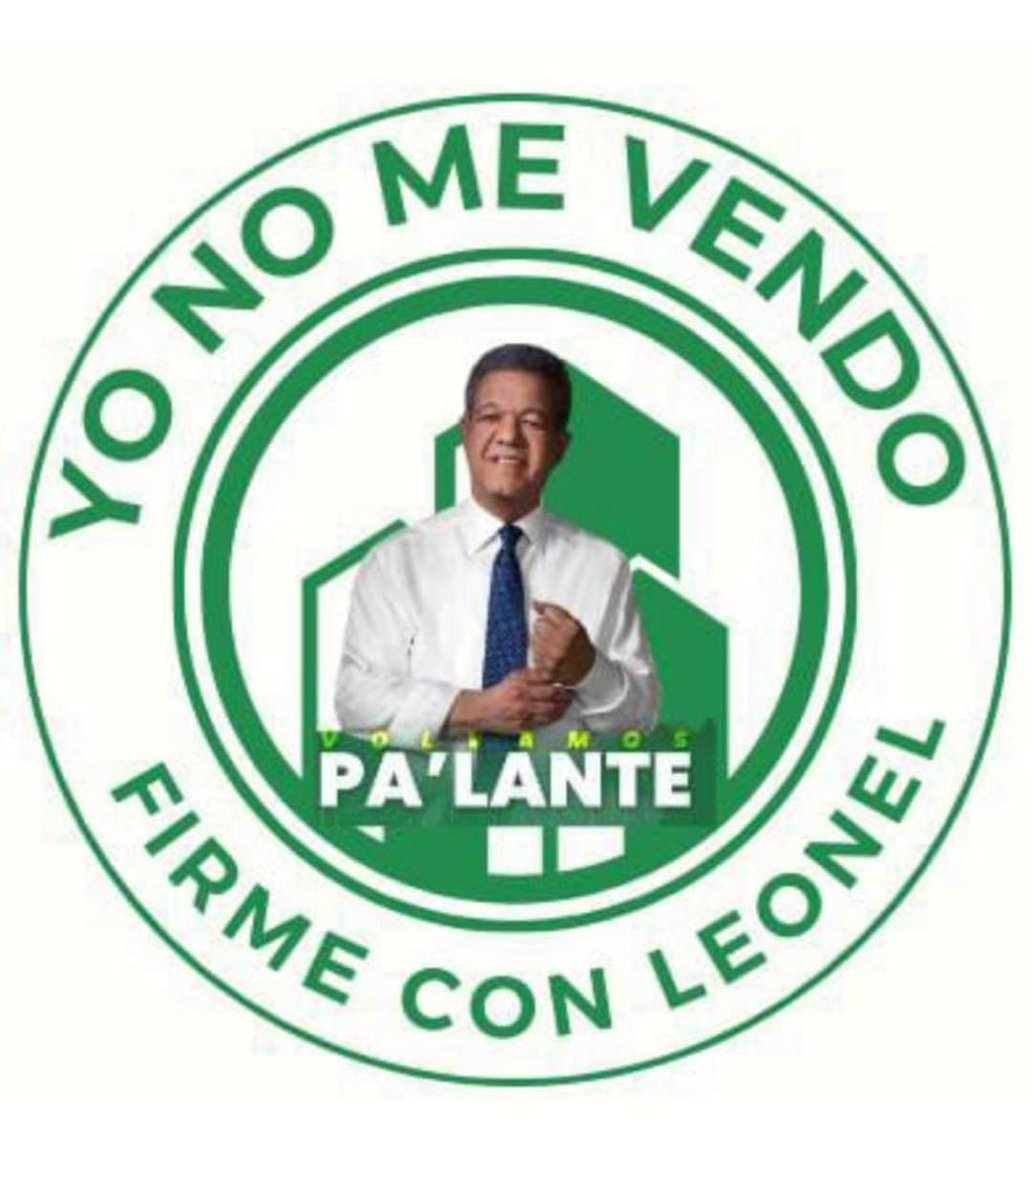 #LeonelFernández
#Vota3
#FuerzaDelPueblo